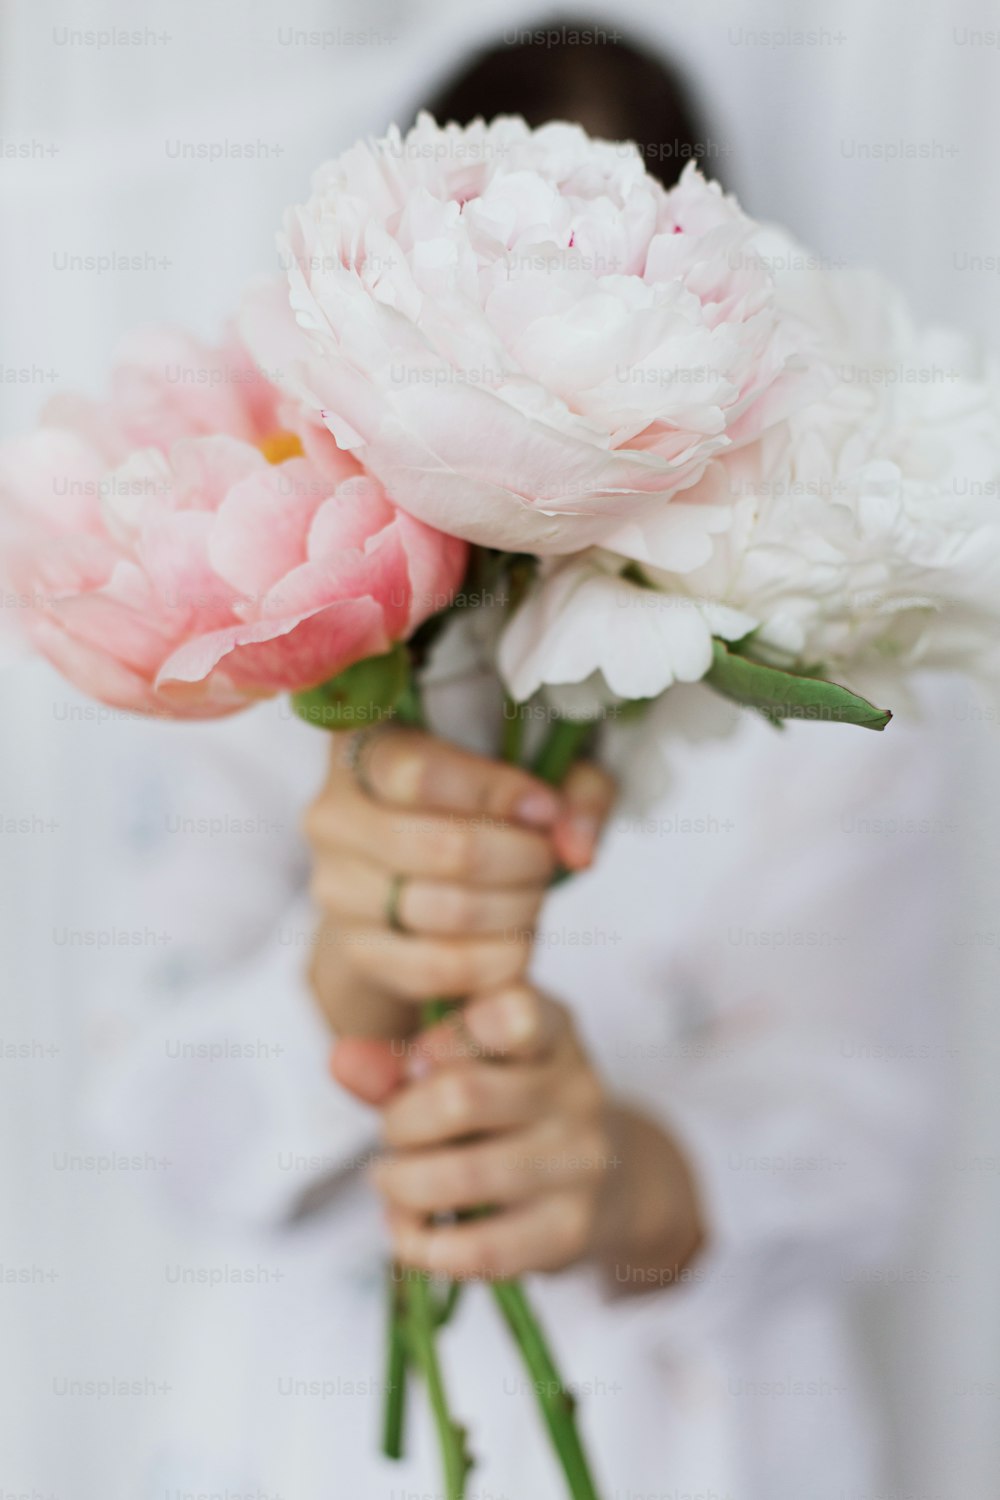 손에 모란 꽃다발을 가진 관능적인 아름다운 여자. 젊은 세련된 여성은 부드럽게 큰 분홍색과 흰색 모란 꽃을 들고 있습니다. 부드러운 부드러운 이미지. 봄 미학. 신부의 아침